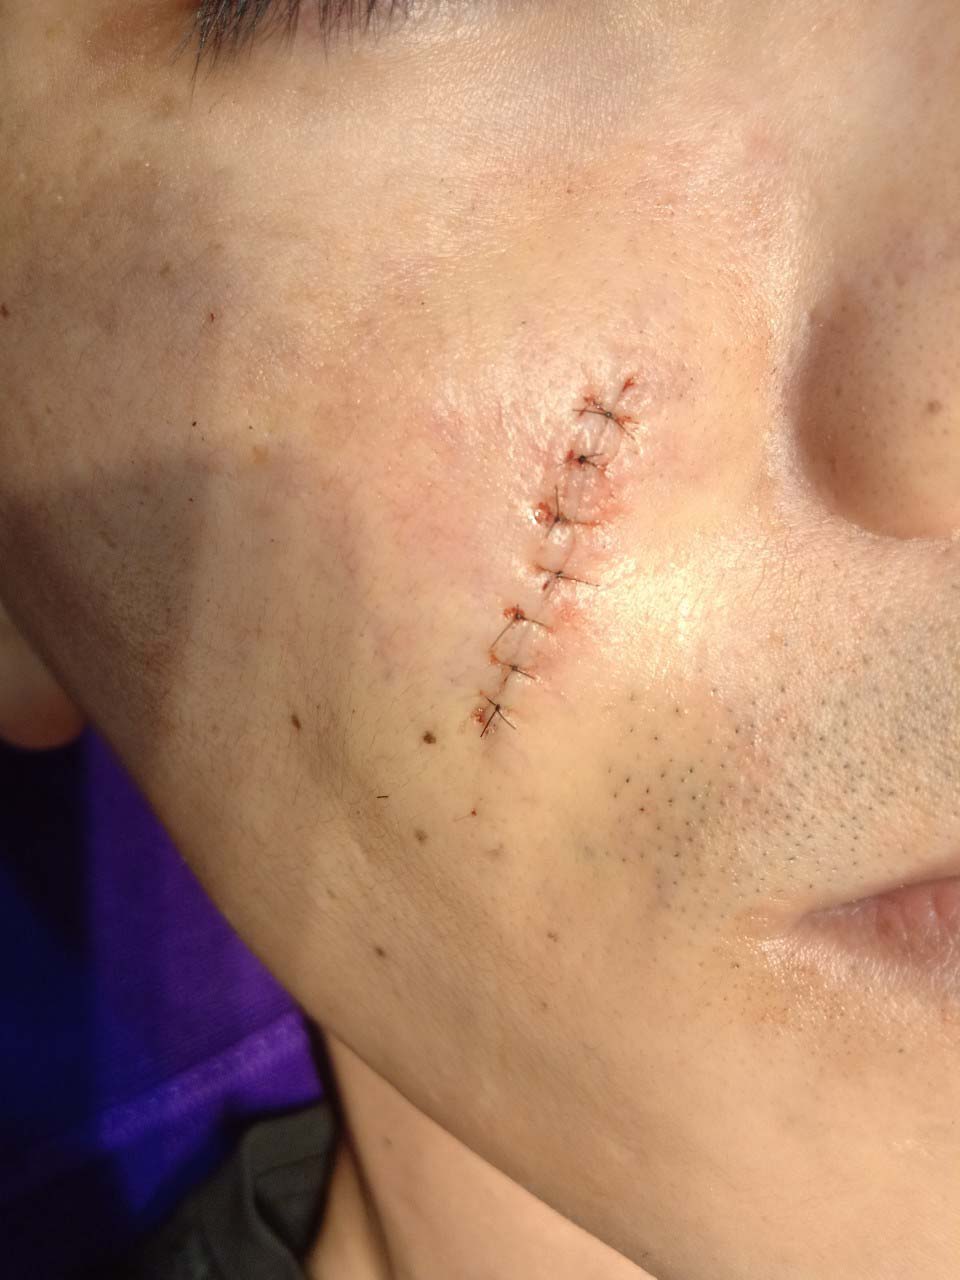 傷口疤痕重新修補 - 皮膚微創手術前